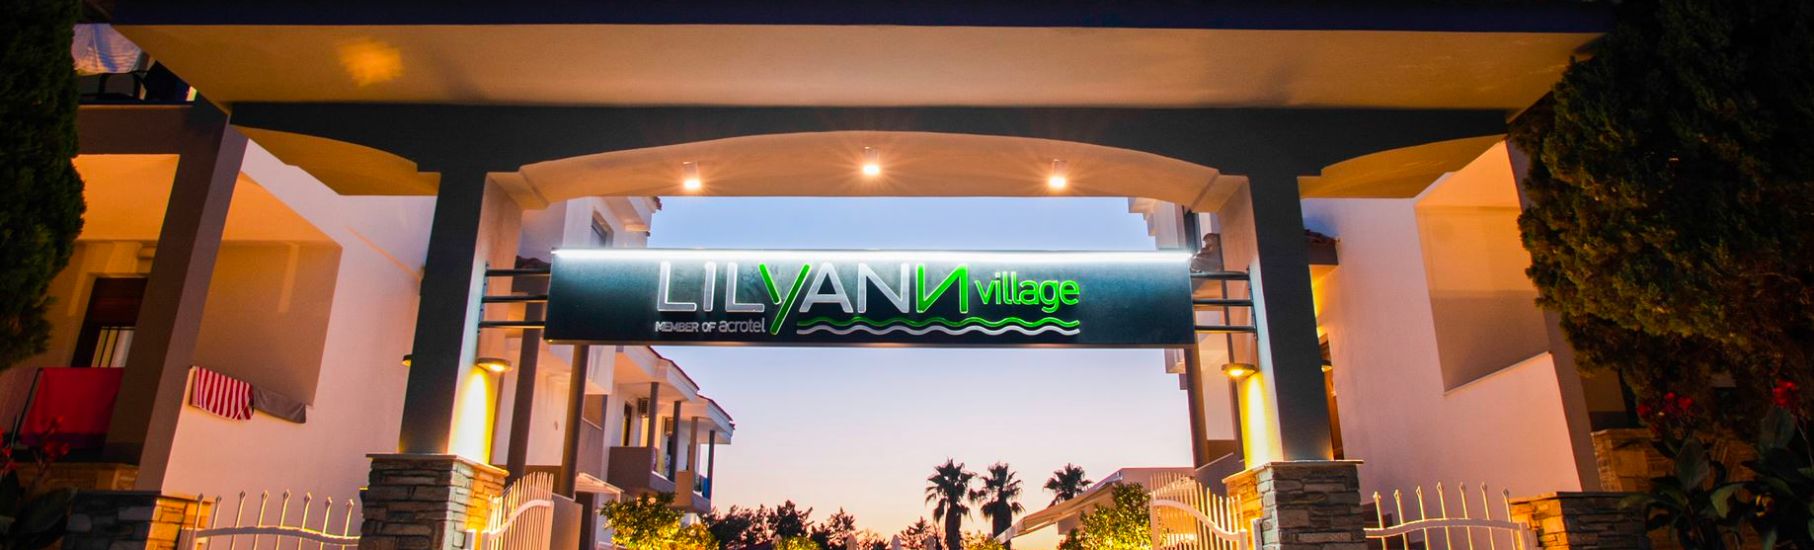 Lily Ann Village hotel